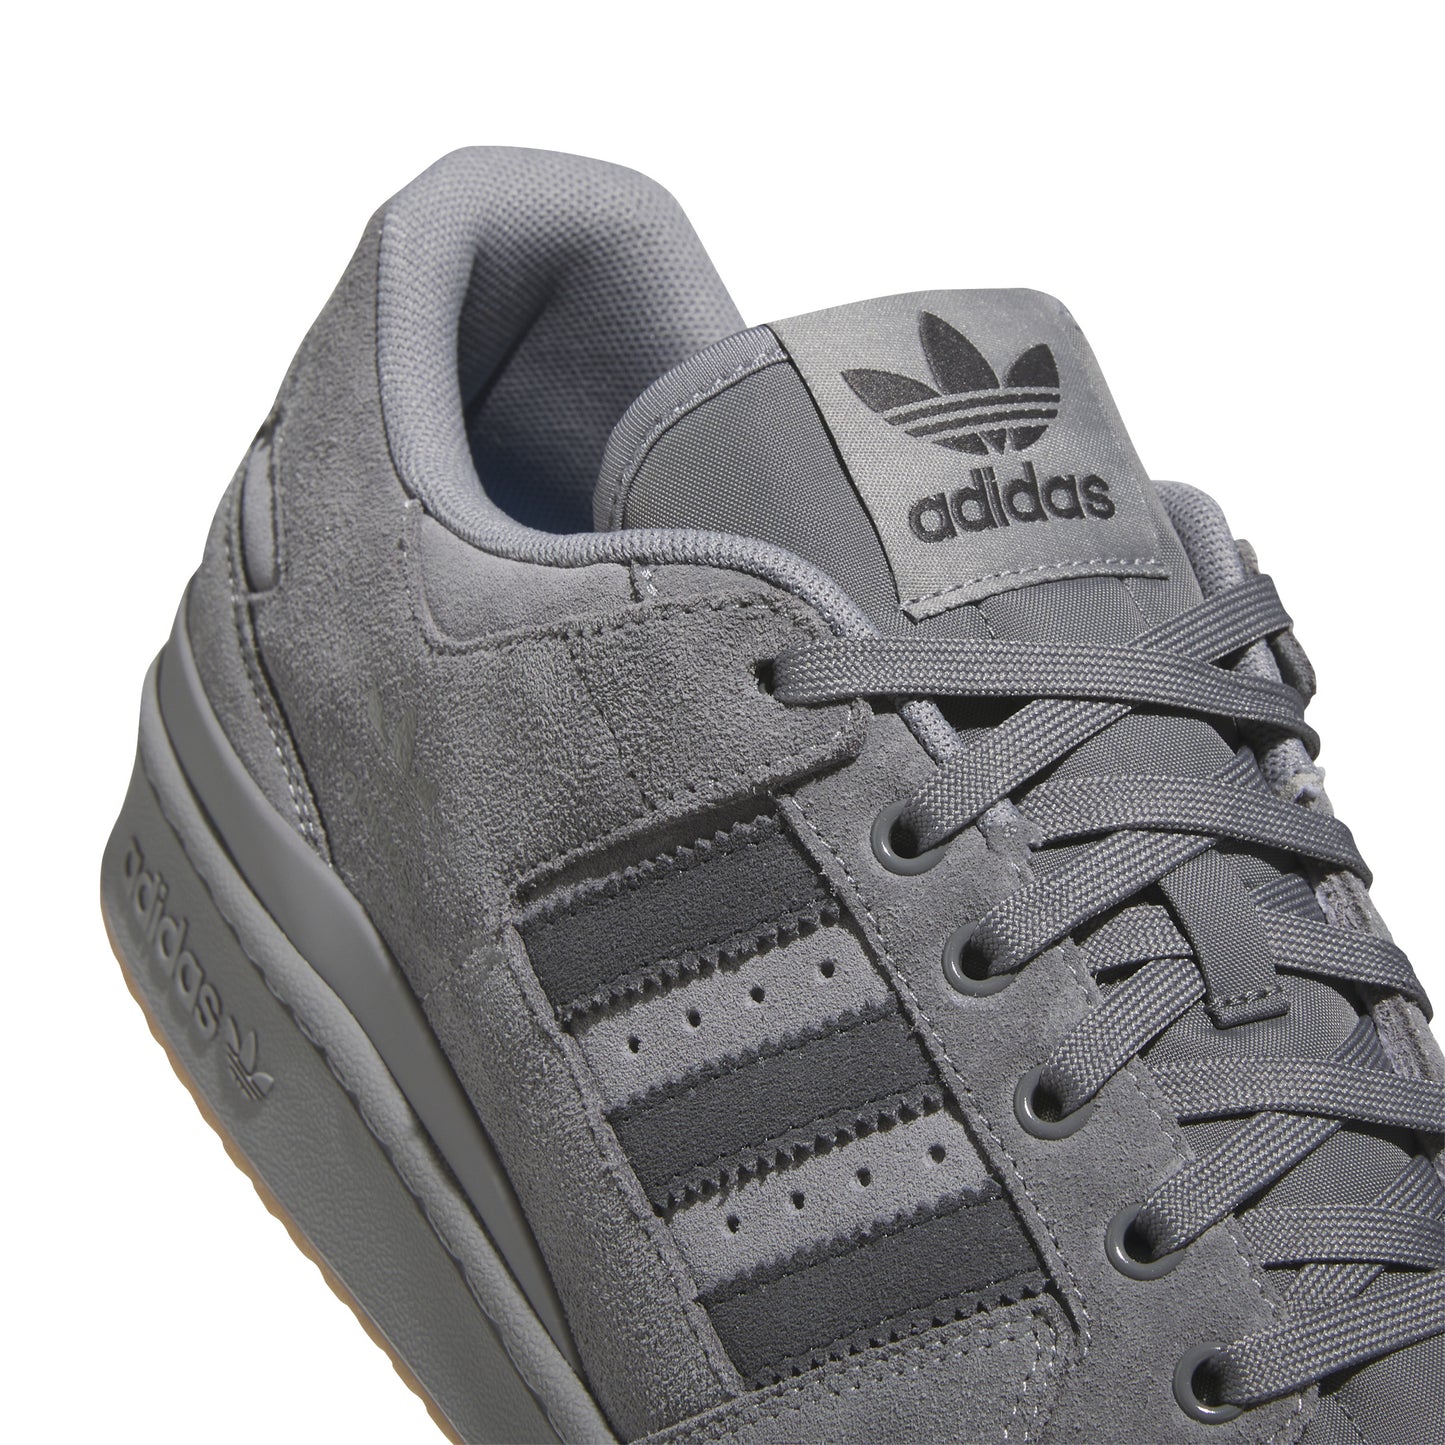 Adidas Forum 84 Low ADV Grey Four / Carbon / Grey Three